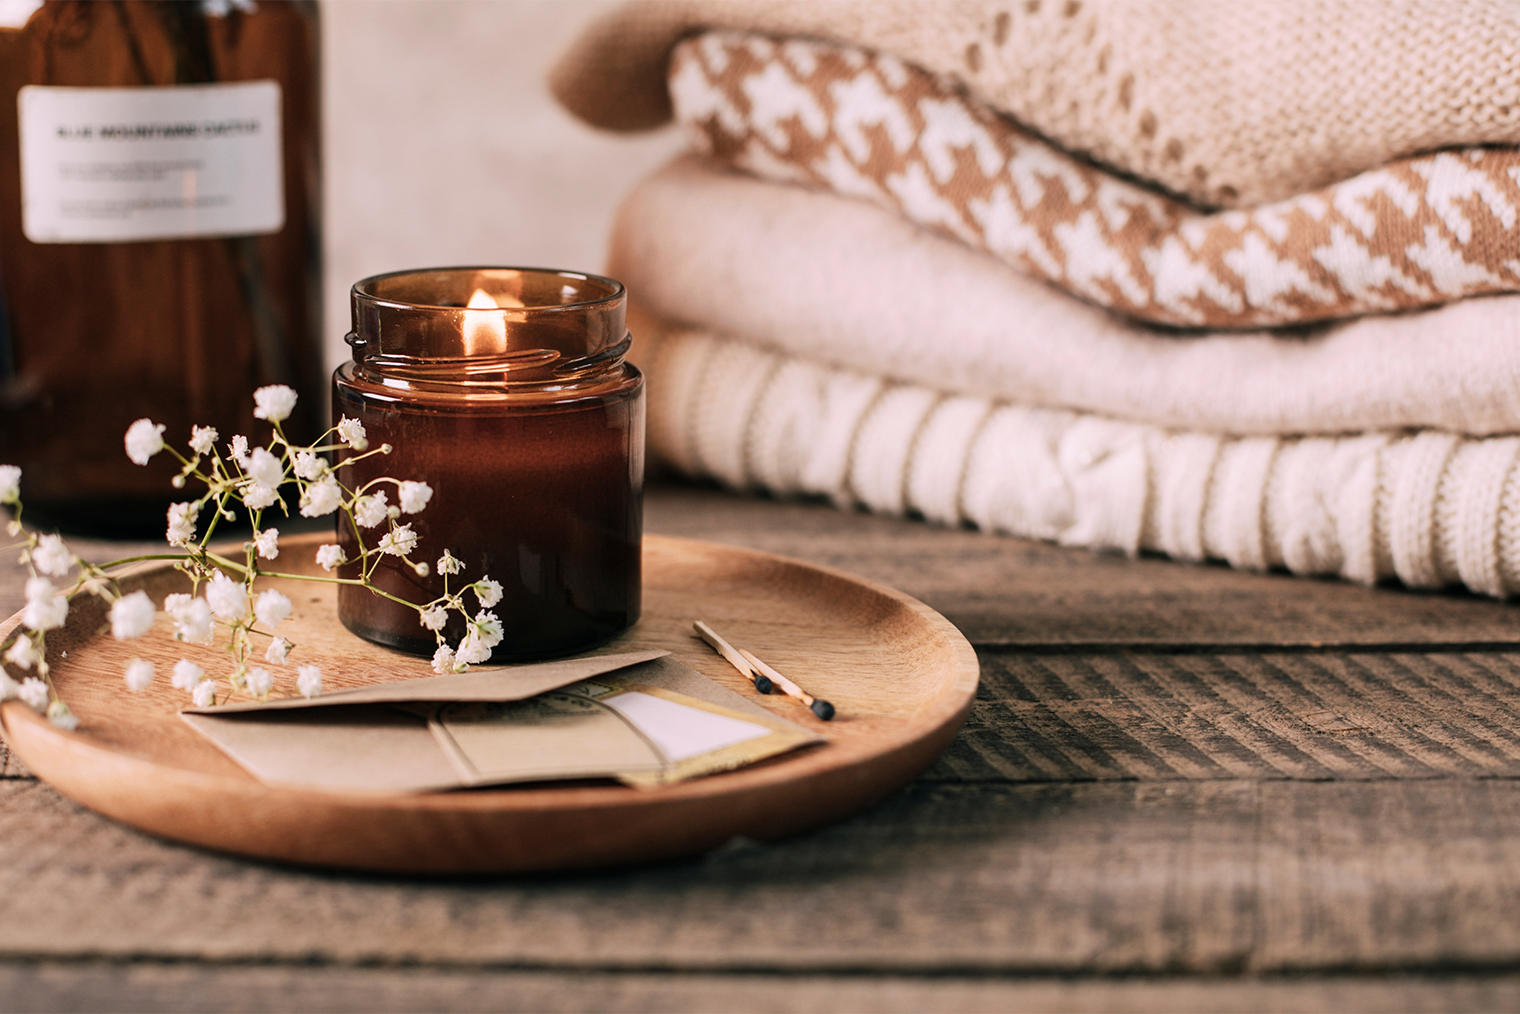 Хюгге — это что⁠-⁠то теплое: ароматическая свеча, плед, тактильно приятные ощущения. Фотография: AnikonaAnn / Shutterstock